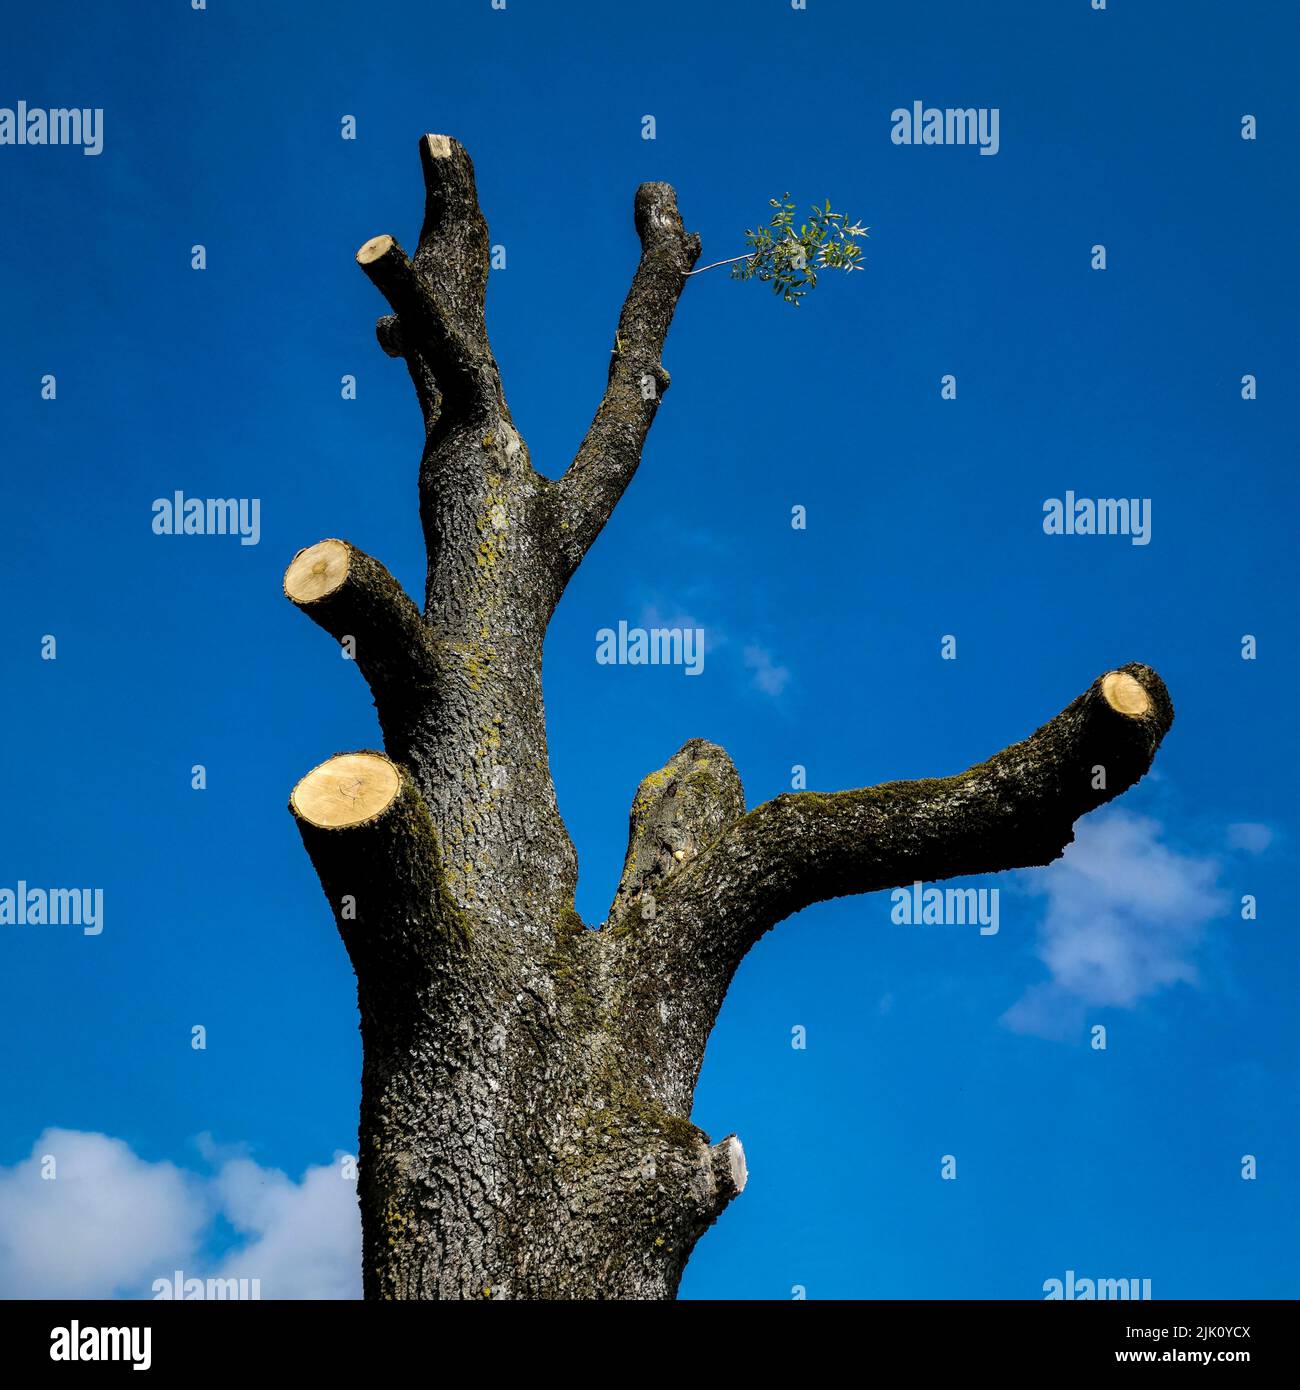 Plano de ángulo bajo del tronco musgoso de un árbol desnudo con ramas cortadas bajo un cielo azul claro Foto de stock